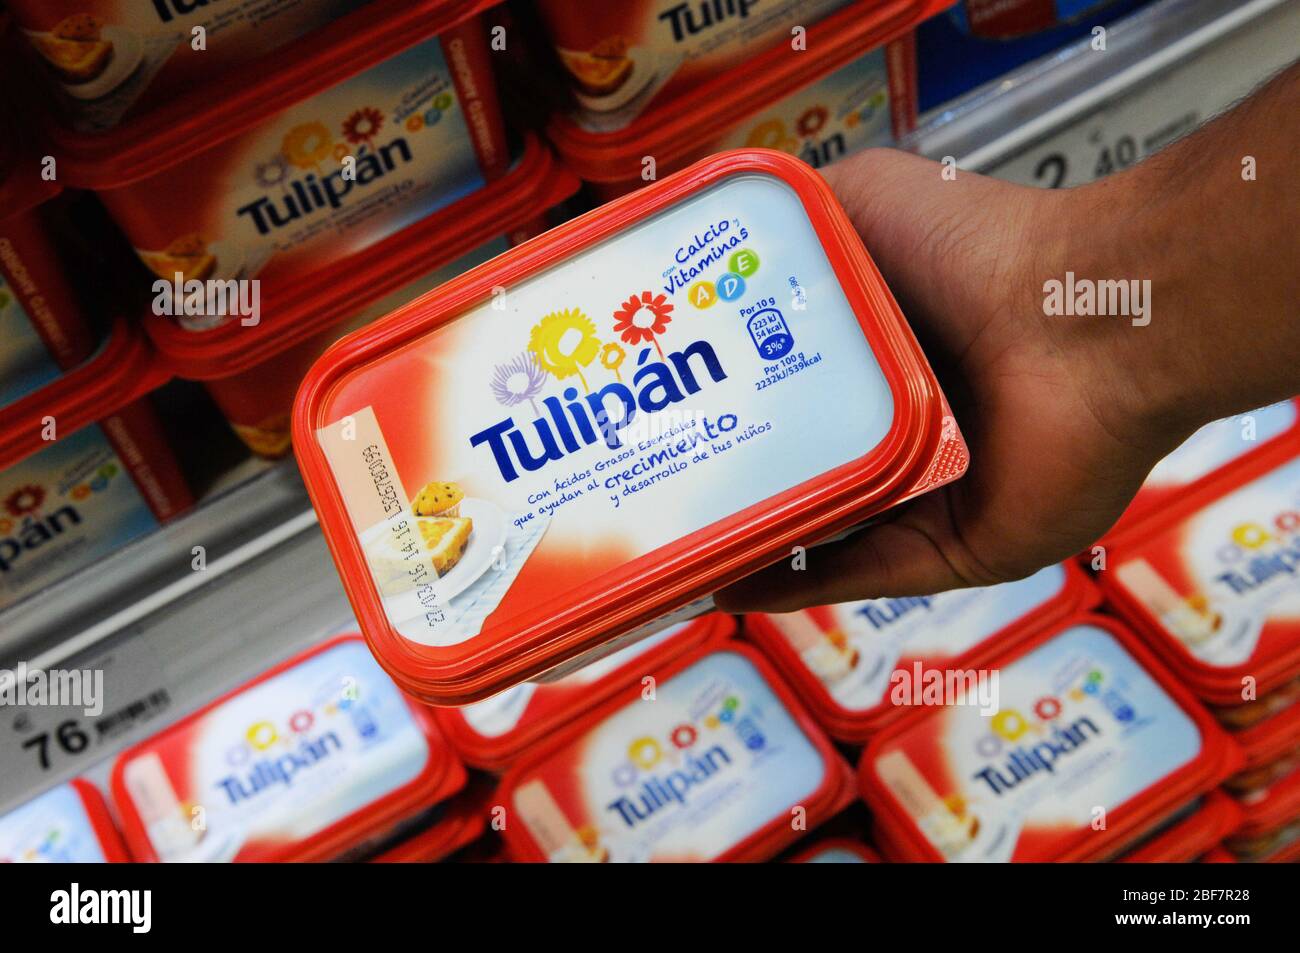 Tulipan,margarine Stock Photo